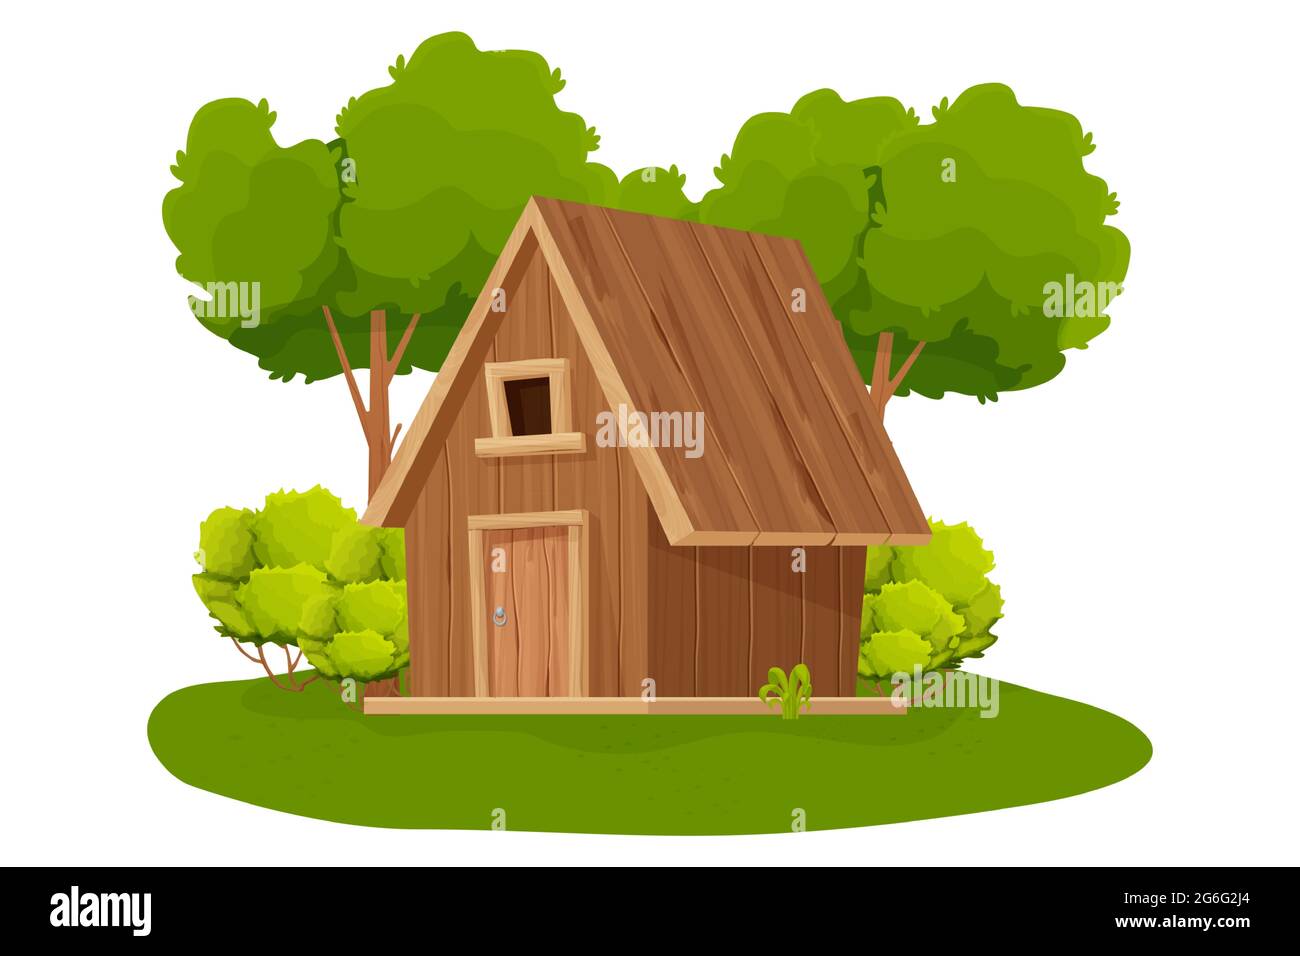 Waldhütte, Holzhaus oder Hütte mit Bäumen, Gras und Busch im Cartoon-Stil auf weißem Hintergrund isoliert dekoriert. Hütte, Landhaus mit Dach, Fenster und Tür. . Vektorgrafik Stock Vektor